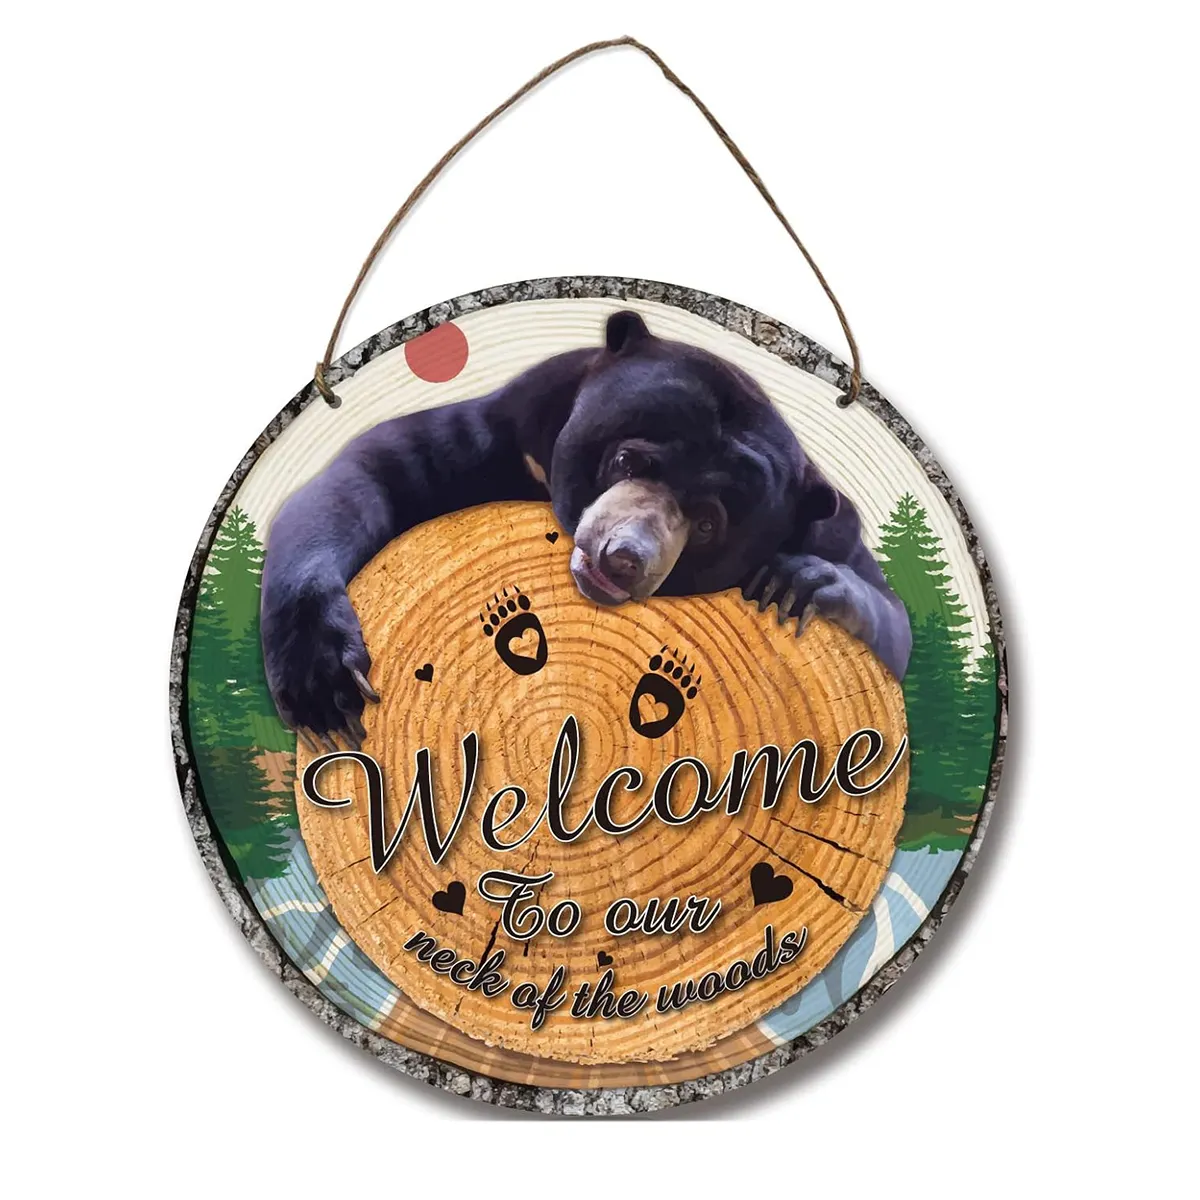 Bonito cartel de bienvenida de oso negro, decoración de pared colgante de madera redonda Natural para casa de campo, lago, casa, bosque, cabaña, porche delantero